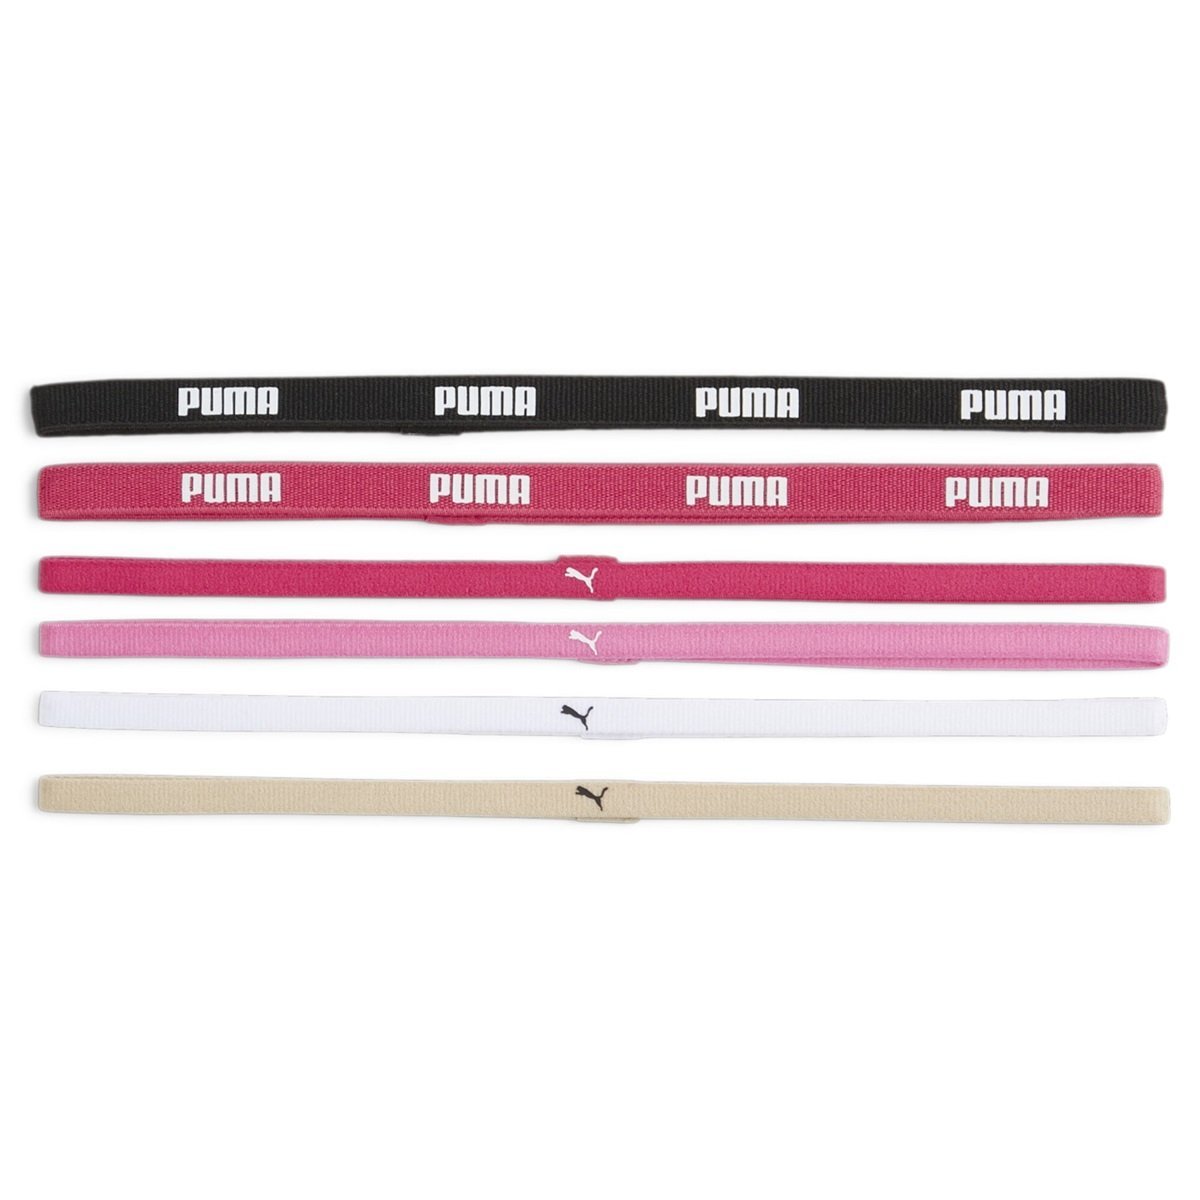 Puma AT Sportbands čelenka (6ks) W - čierna/ružová/biela/hnedá